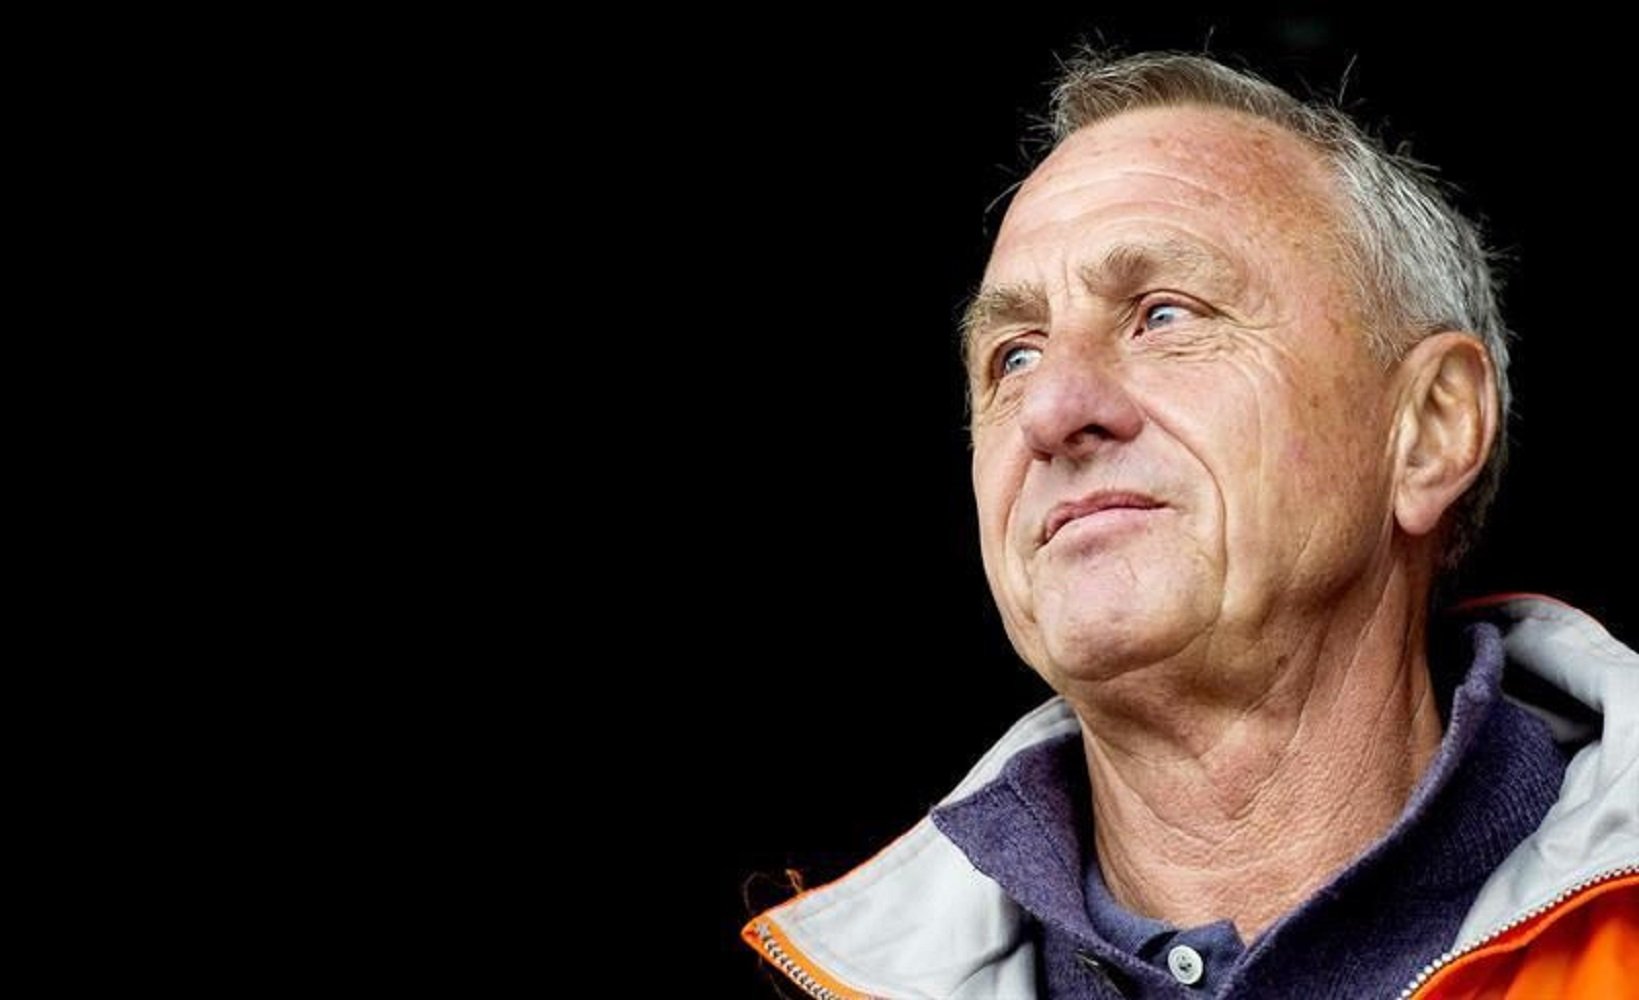 El mundo del deporte recuerda la figura de Cruyff